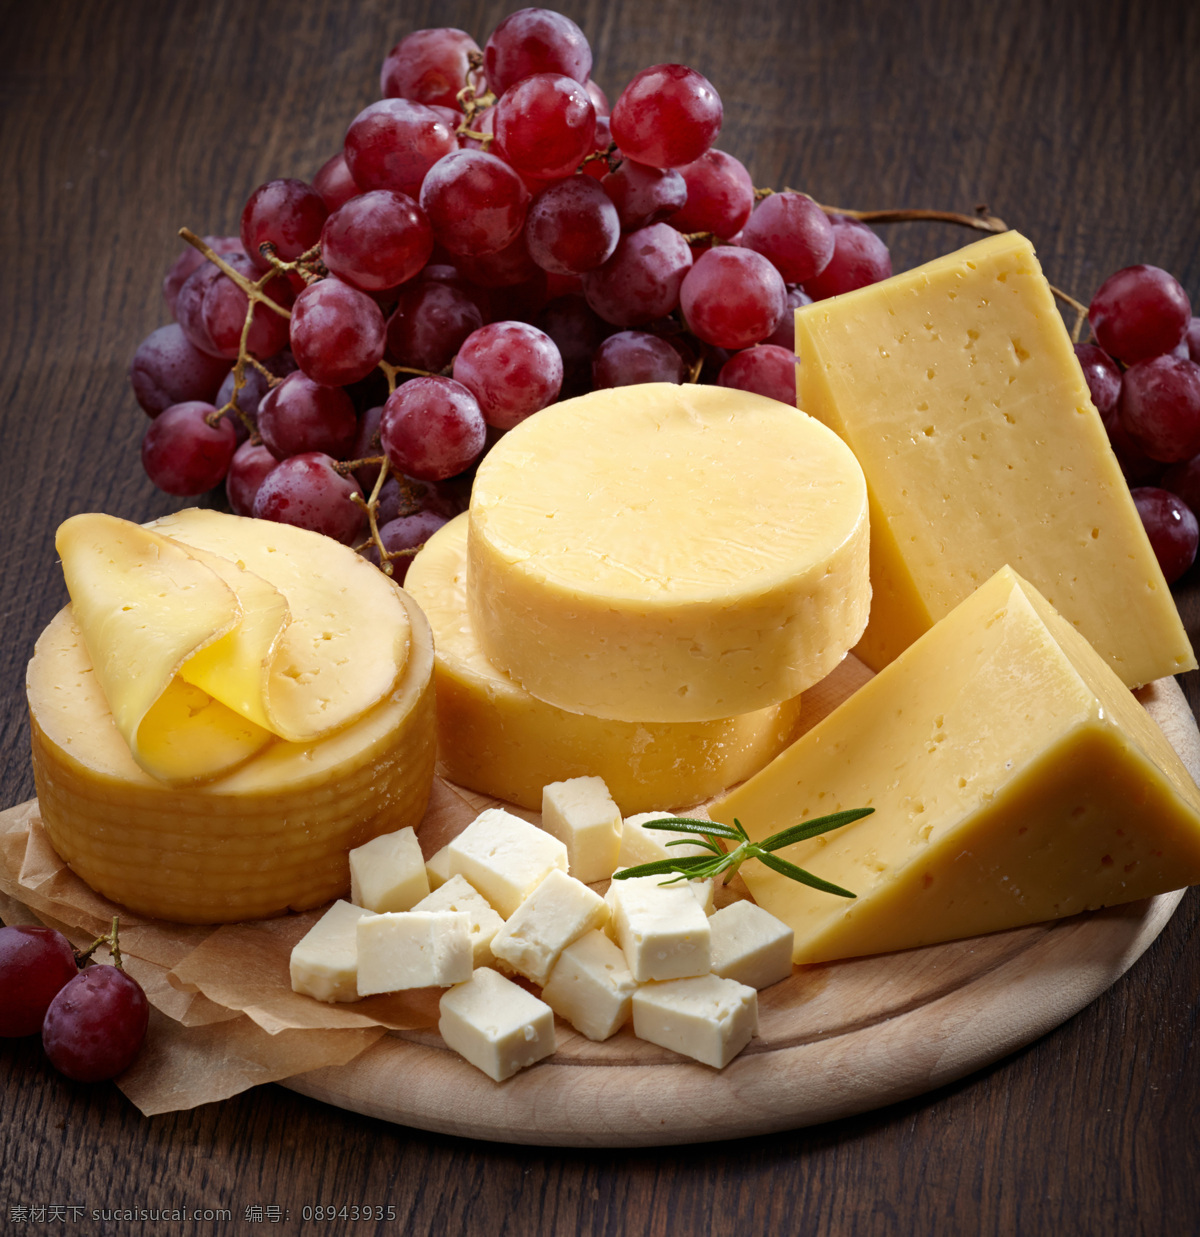 奶酪与提子 奶酪 乳酪 美食 美味 食材 其他类别 餐饮美食 黑色